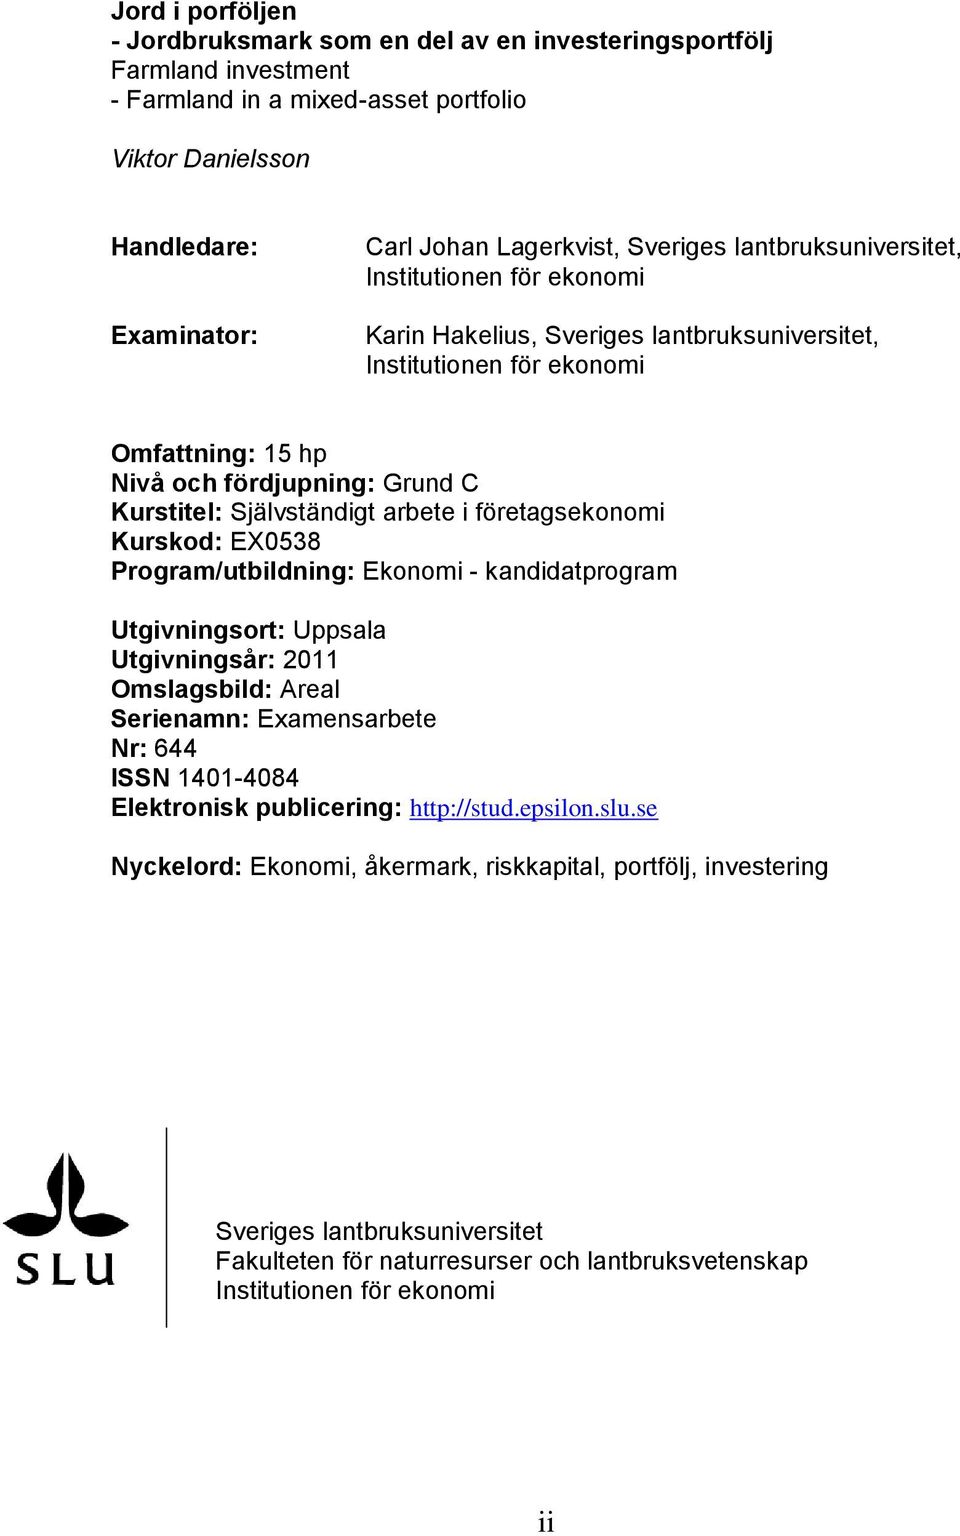 Självständigt arbete i företagsekonomi Kurskod: EX0538 Program/utbildning: Ekonomi - kandidatprogram Utgivningsort: Uppsala Utgivningsår: 2011 Omslagsbild: Areal Serienamn: Examensarbete Nr: 644 ISSN